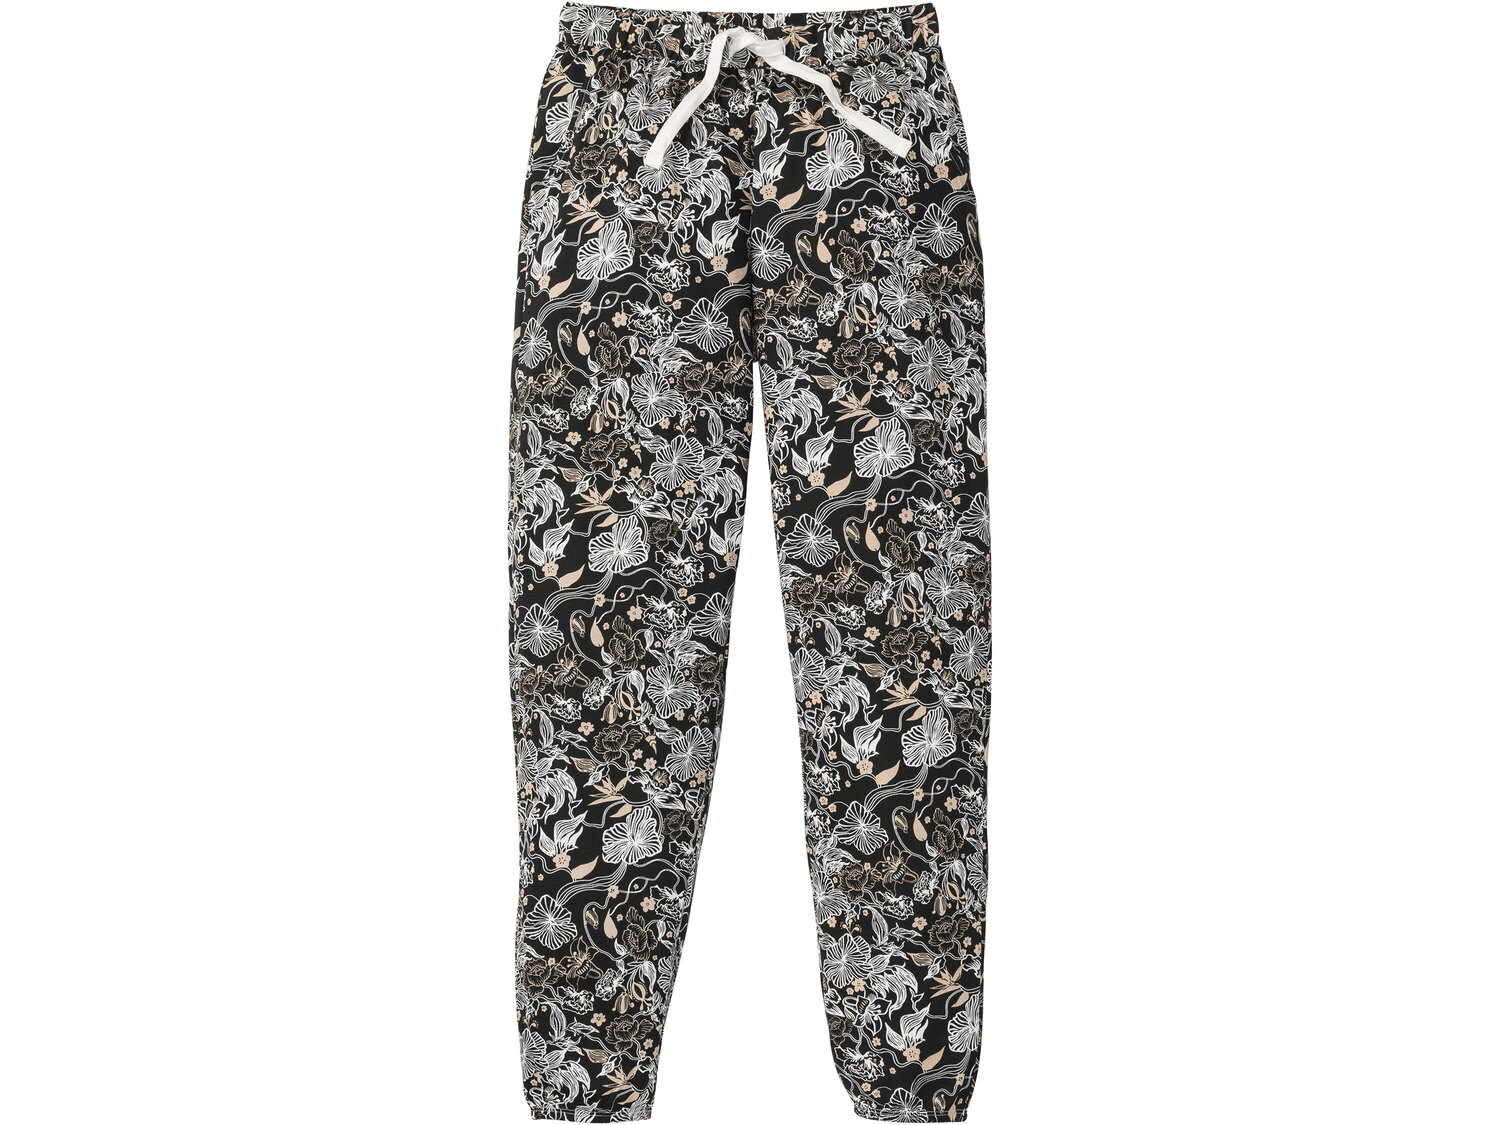 Piżama , cena 34,99 PLN 
- koszulka i spodnie: 100% bawełny
- rozmiary: S-L
Dostępne ...